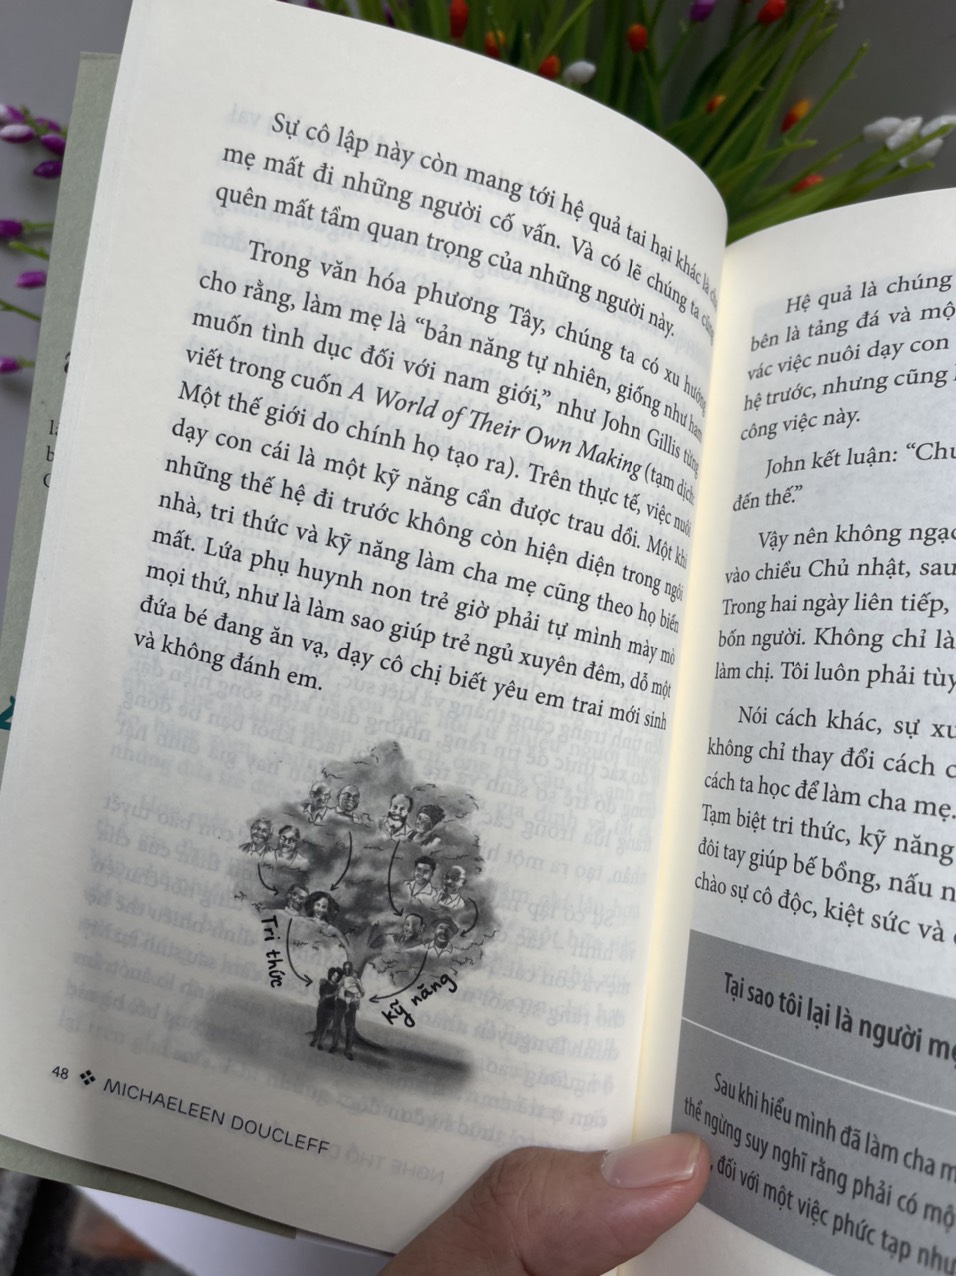 NGHE THỔ DÂN KỂ CHUYỆN DẠY CON – Săn bắt, hai lượm và nghệ thuật làm cha mẹ – Michaeleen Doucleff – Vương Loan dịch – Huy Hoàng Books – NXB Phụ nữ Việt Nam (Bìa mềm)